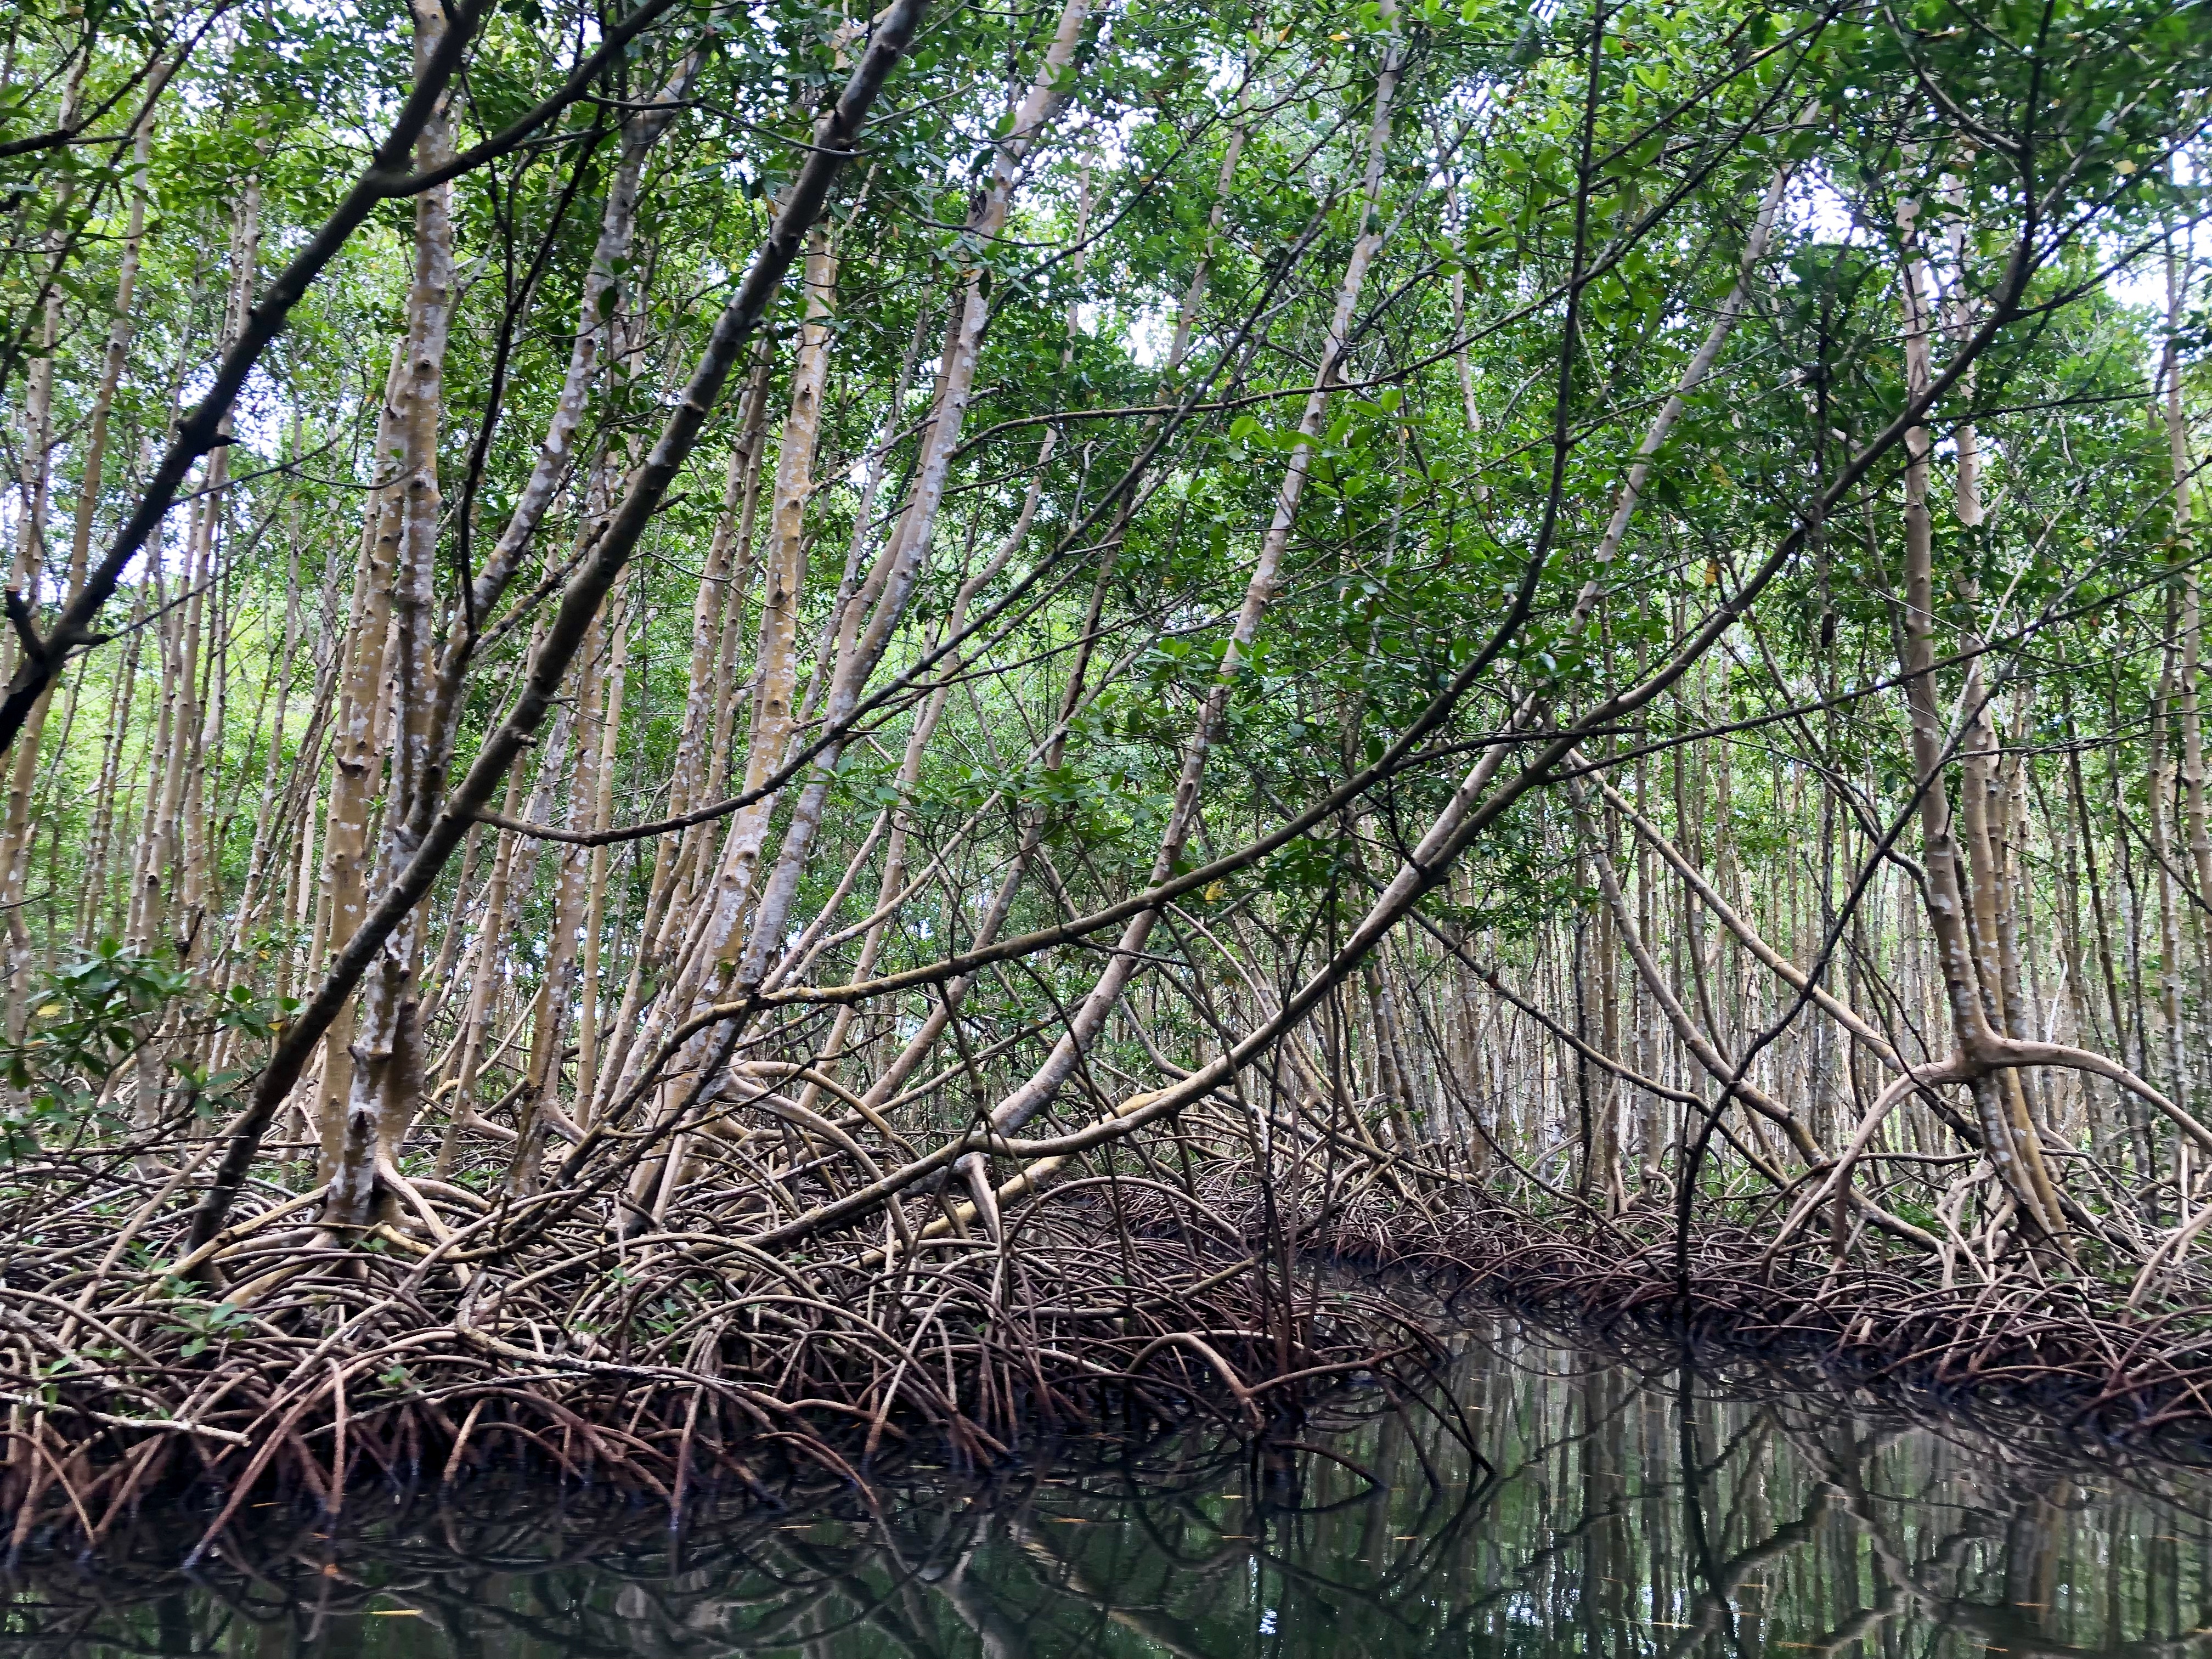     Le corps d'une femme portée disparue retrouvé dans la mangrove de Grand-Baie

